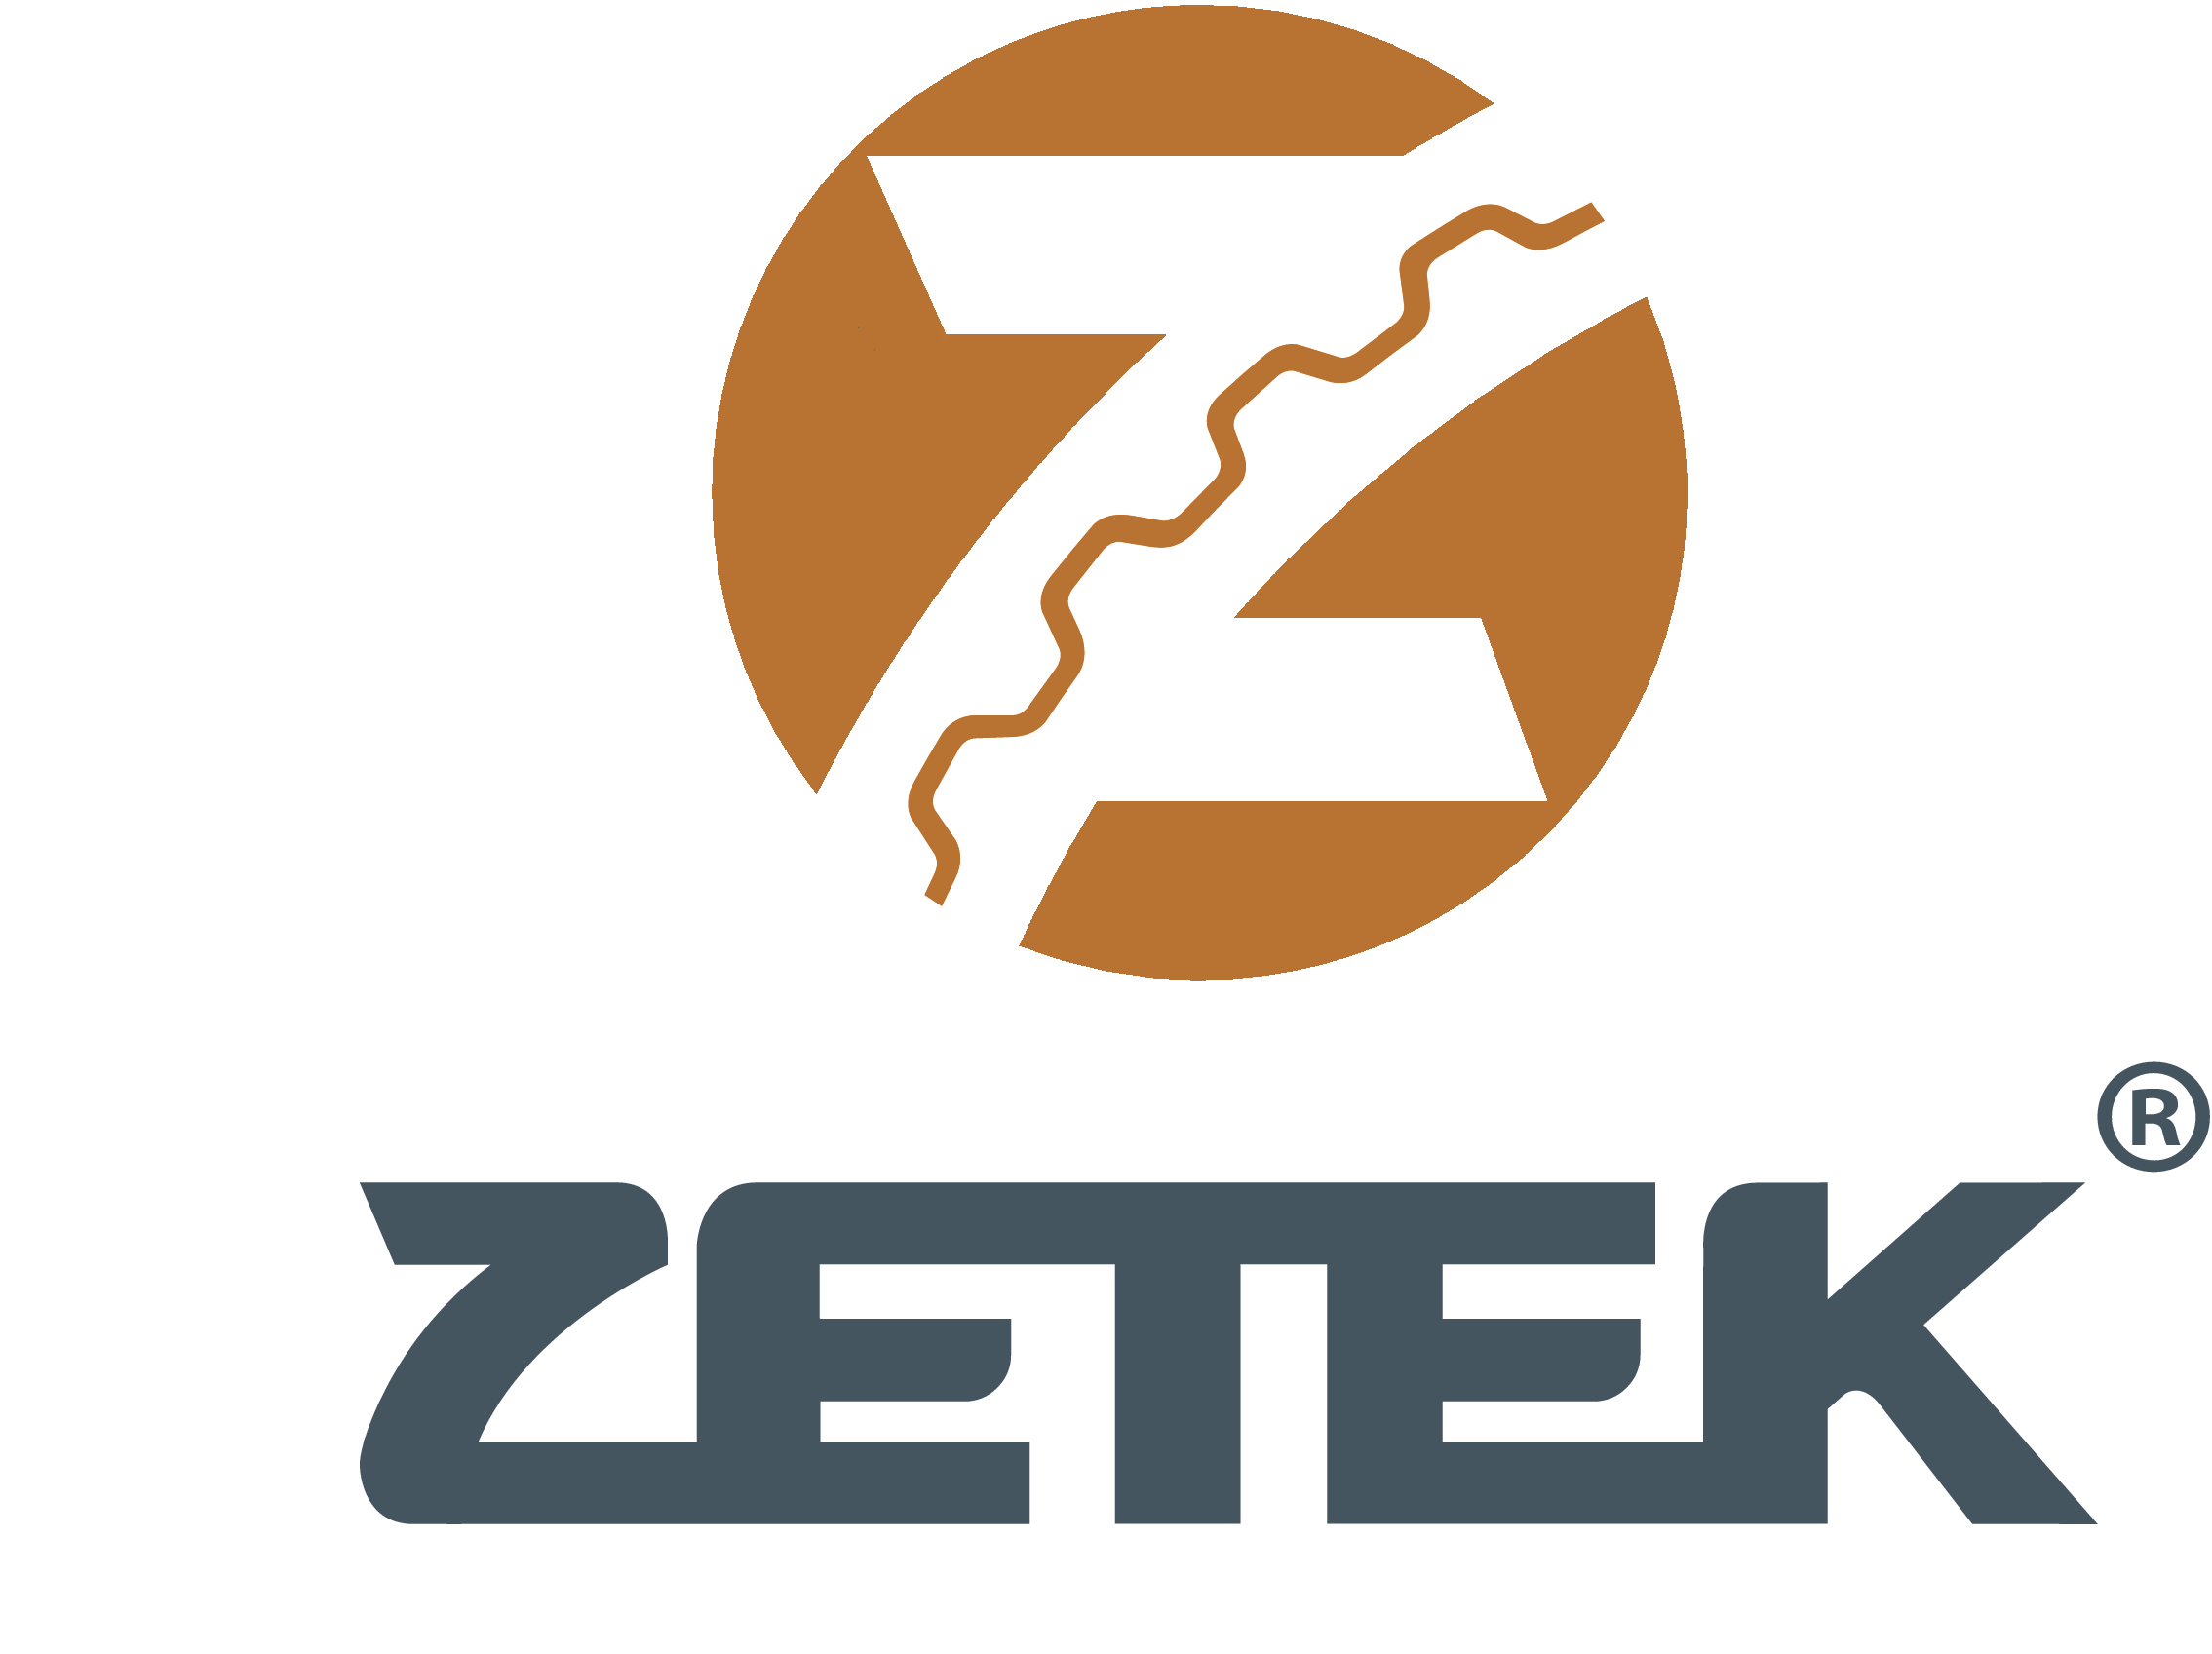 www.shop.zetek.ru